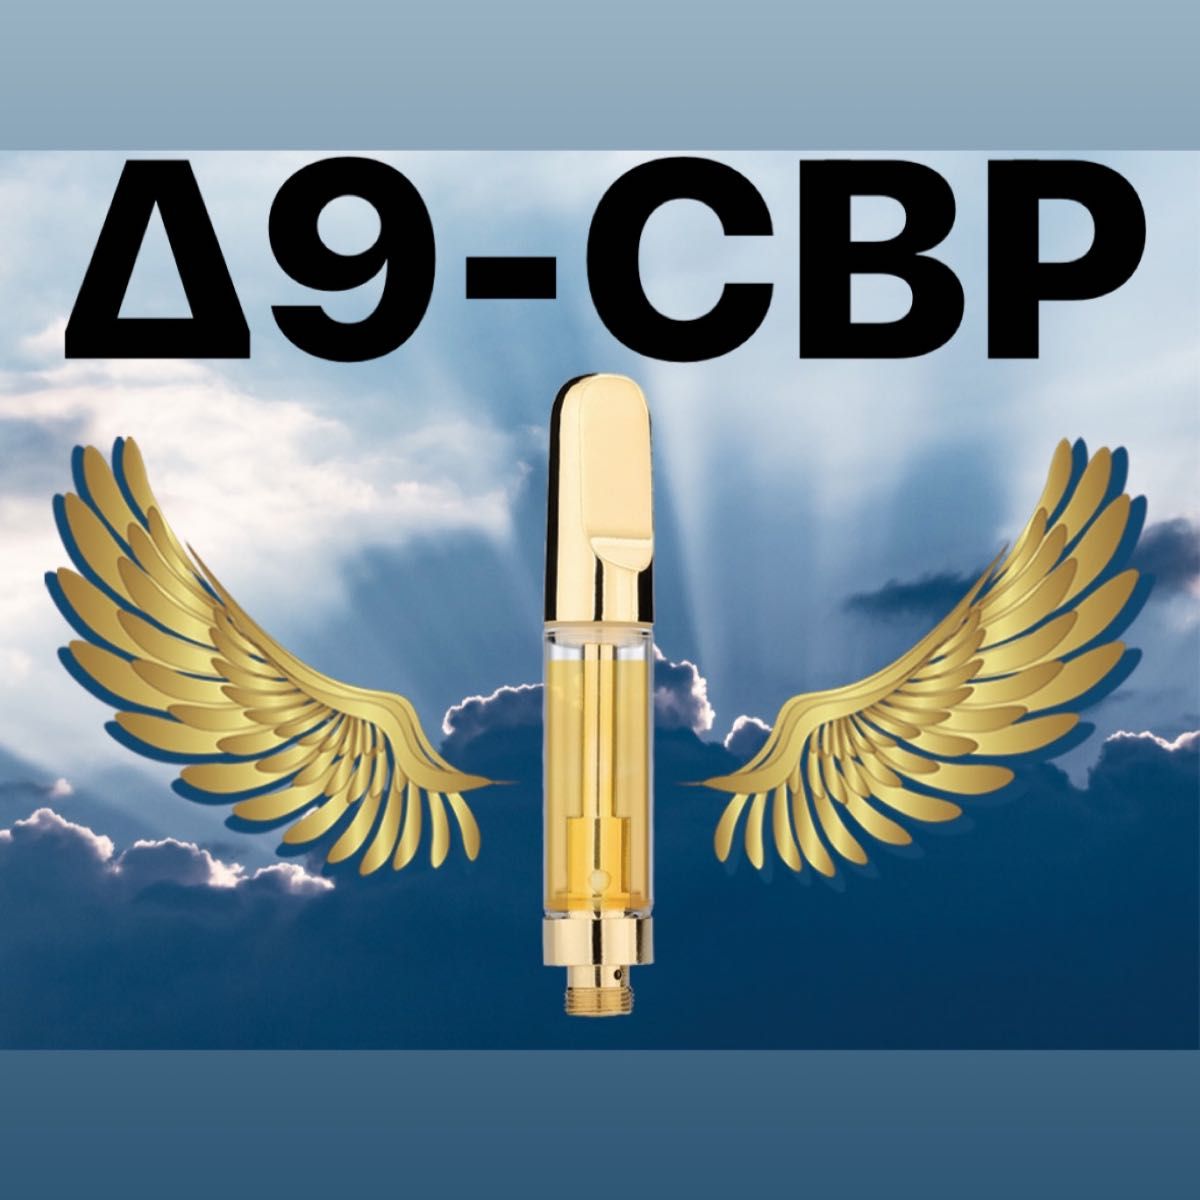 Δ9-CBP リキッド 1ml  80%   O.G.kushフレーバー GWセール第19弾